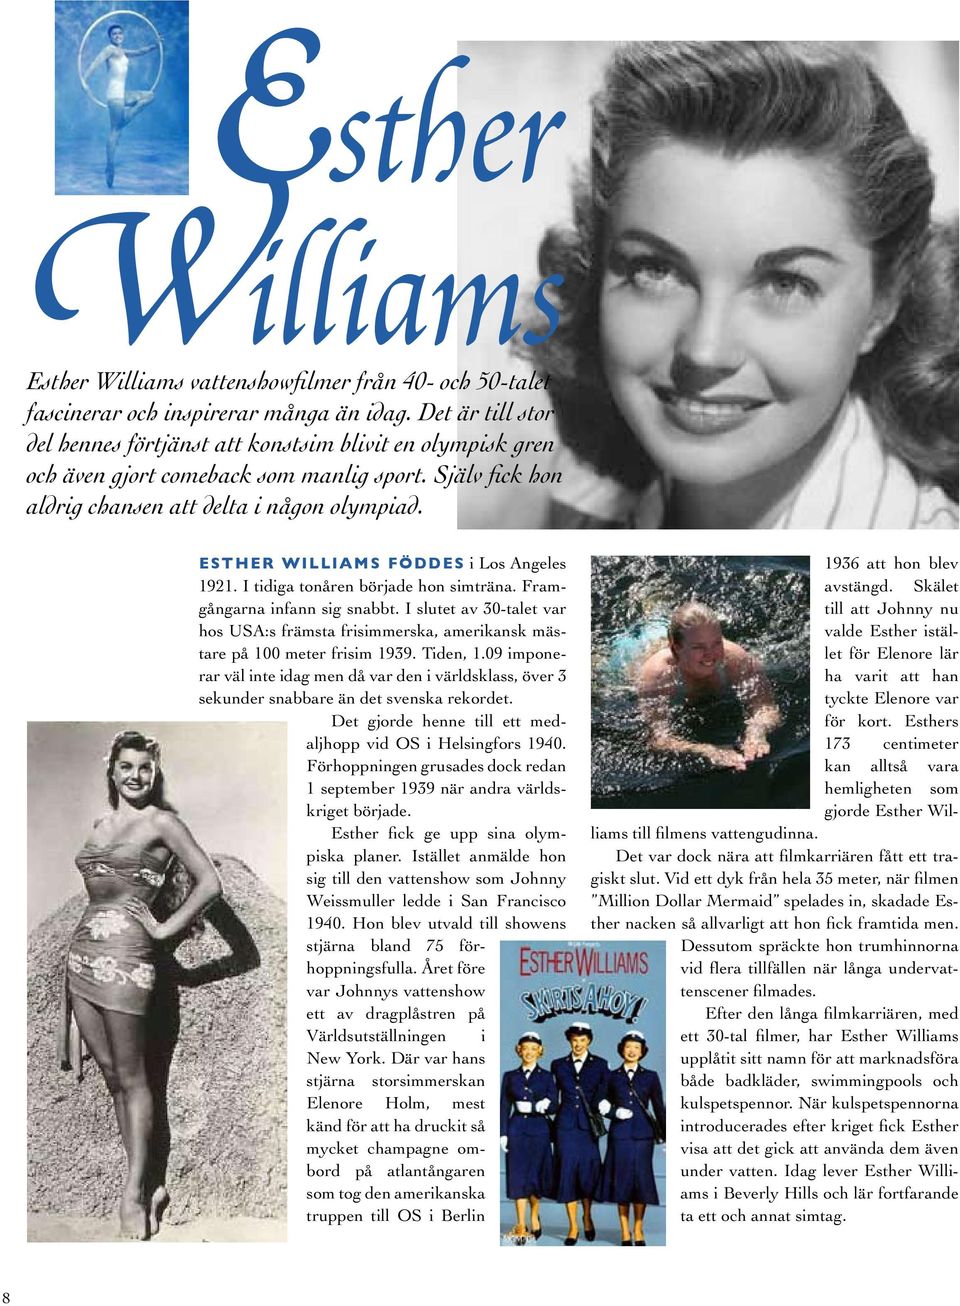 ESTHER WILLIAMS FÖDDES i Los Angeles 1921. I tidiga tonåren började hon simträna. Framgångarna infann sig snabbt.